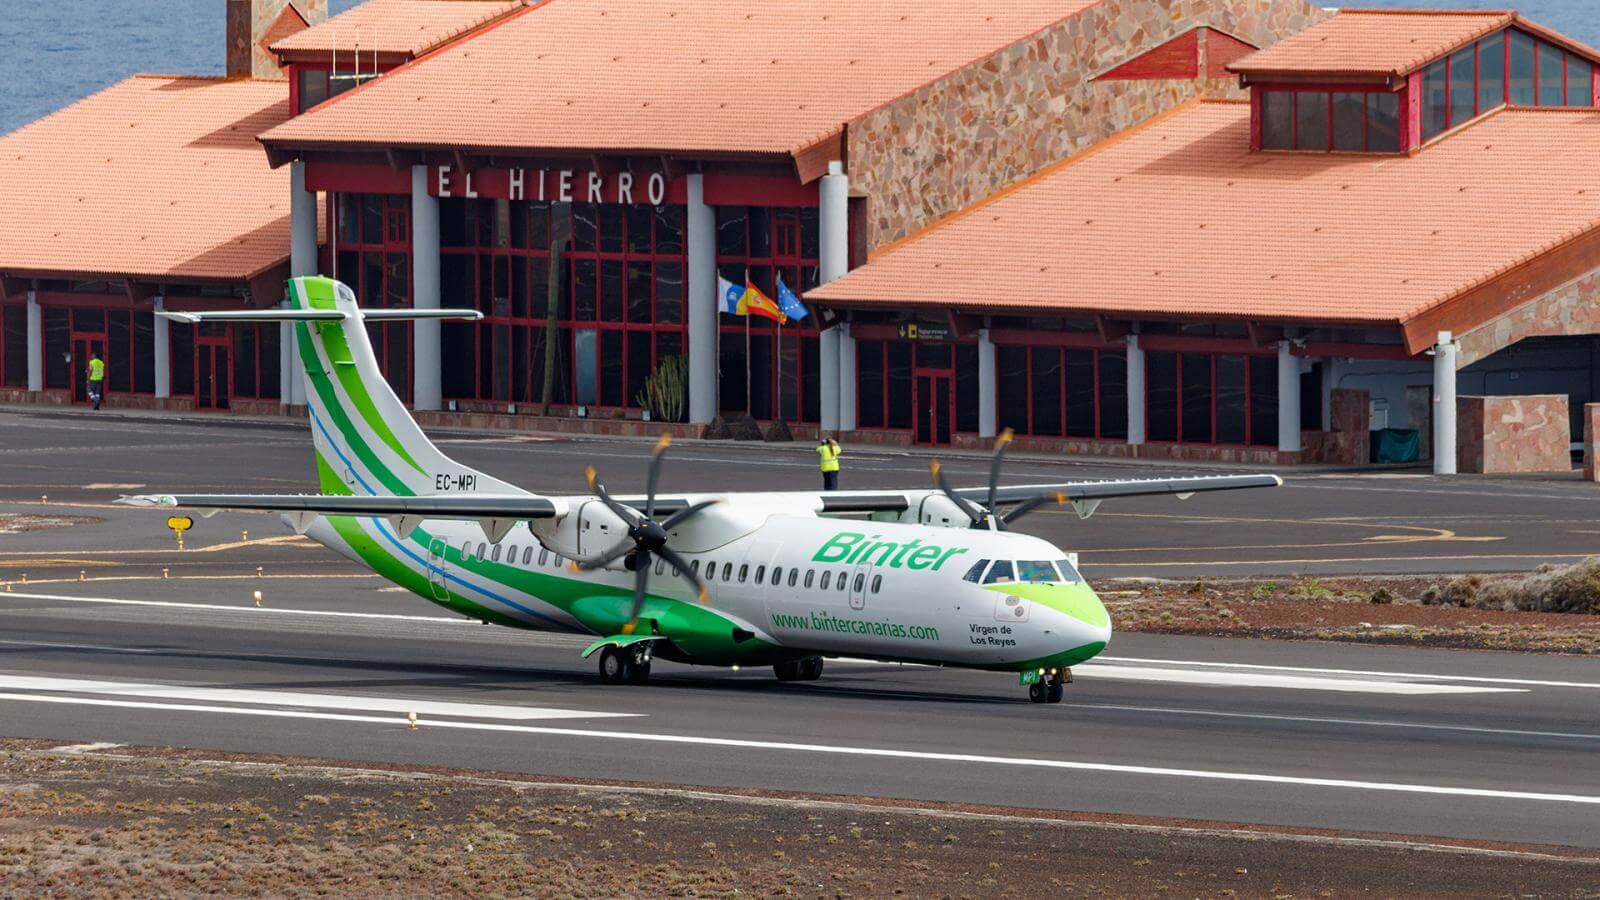 Esperanzado Terminal motivo Viajar entre las islas de Canarias | Hola Islas Canarias